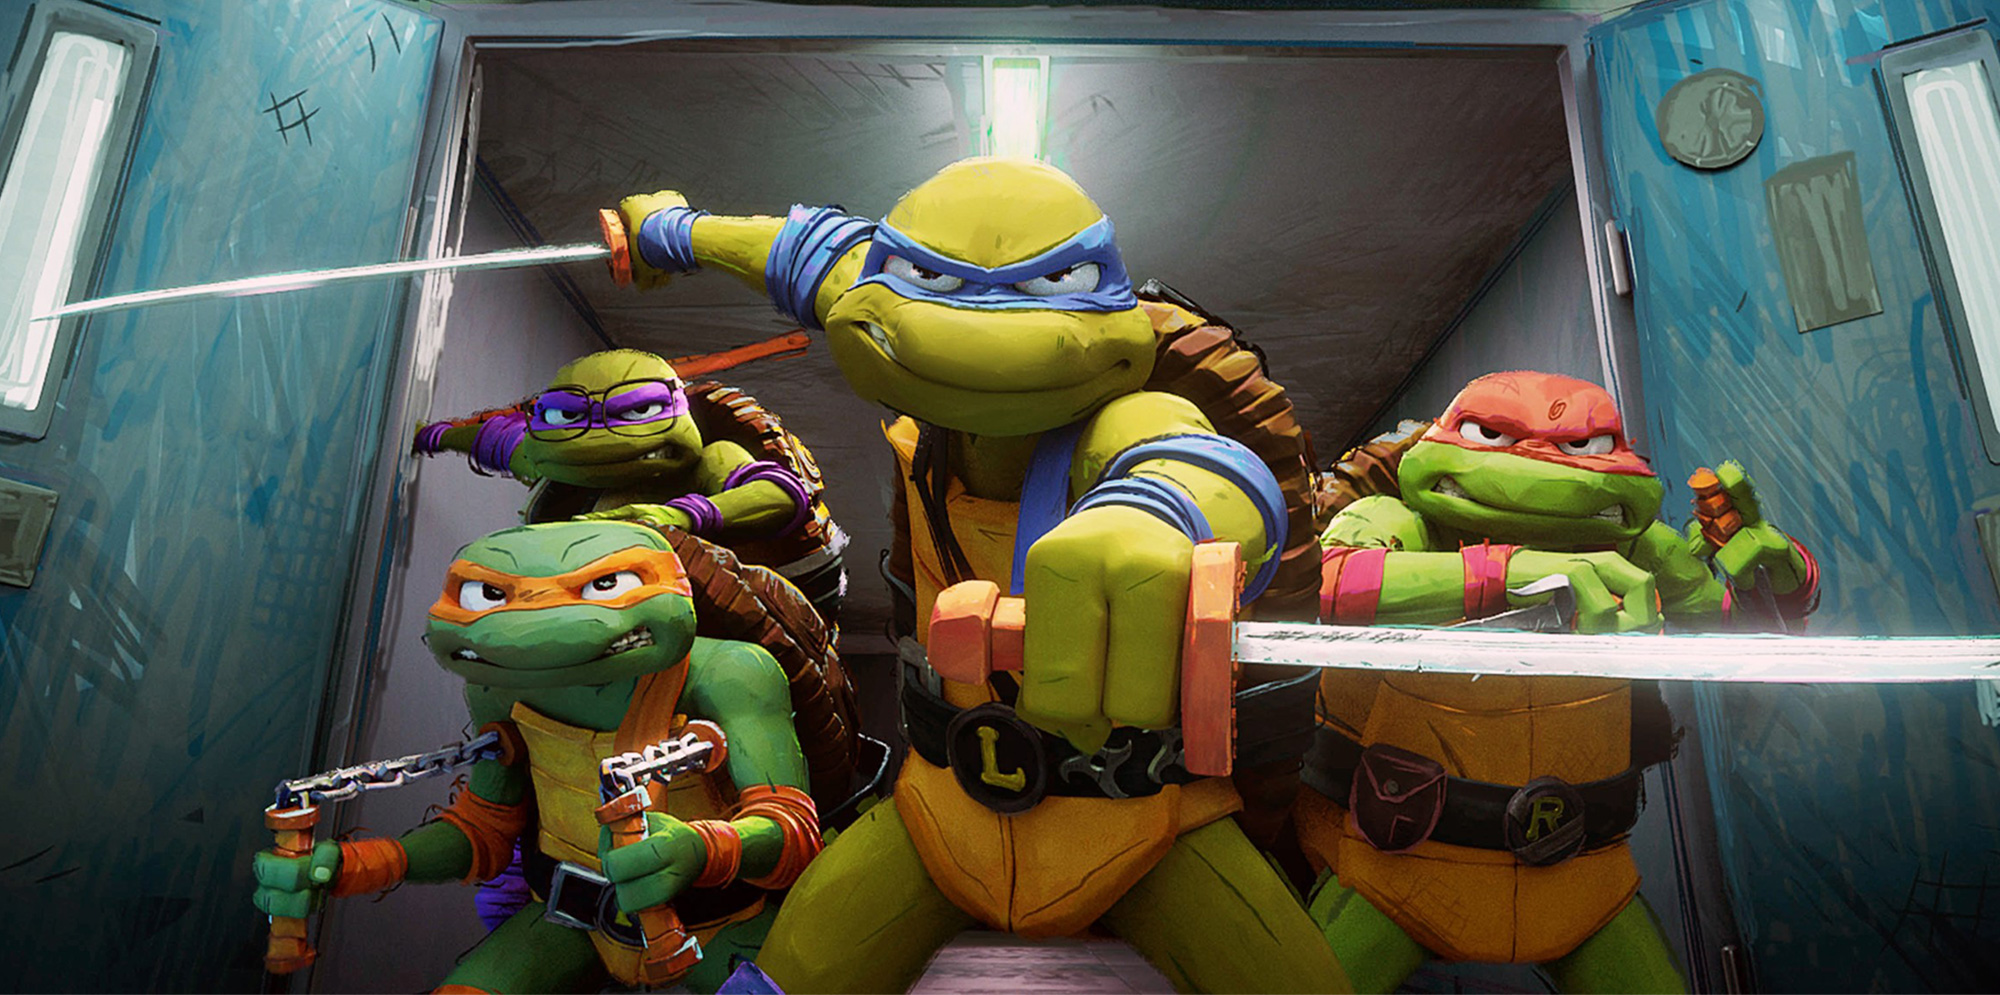 Kowabunga! It's a 'Teenage Mutant Ninja Turtles: Mutant Mayhem' 4K